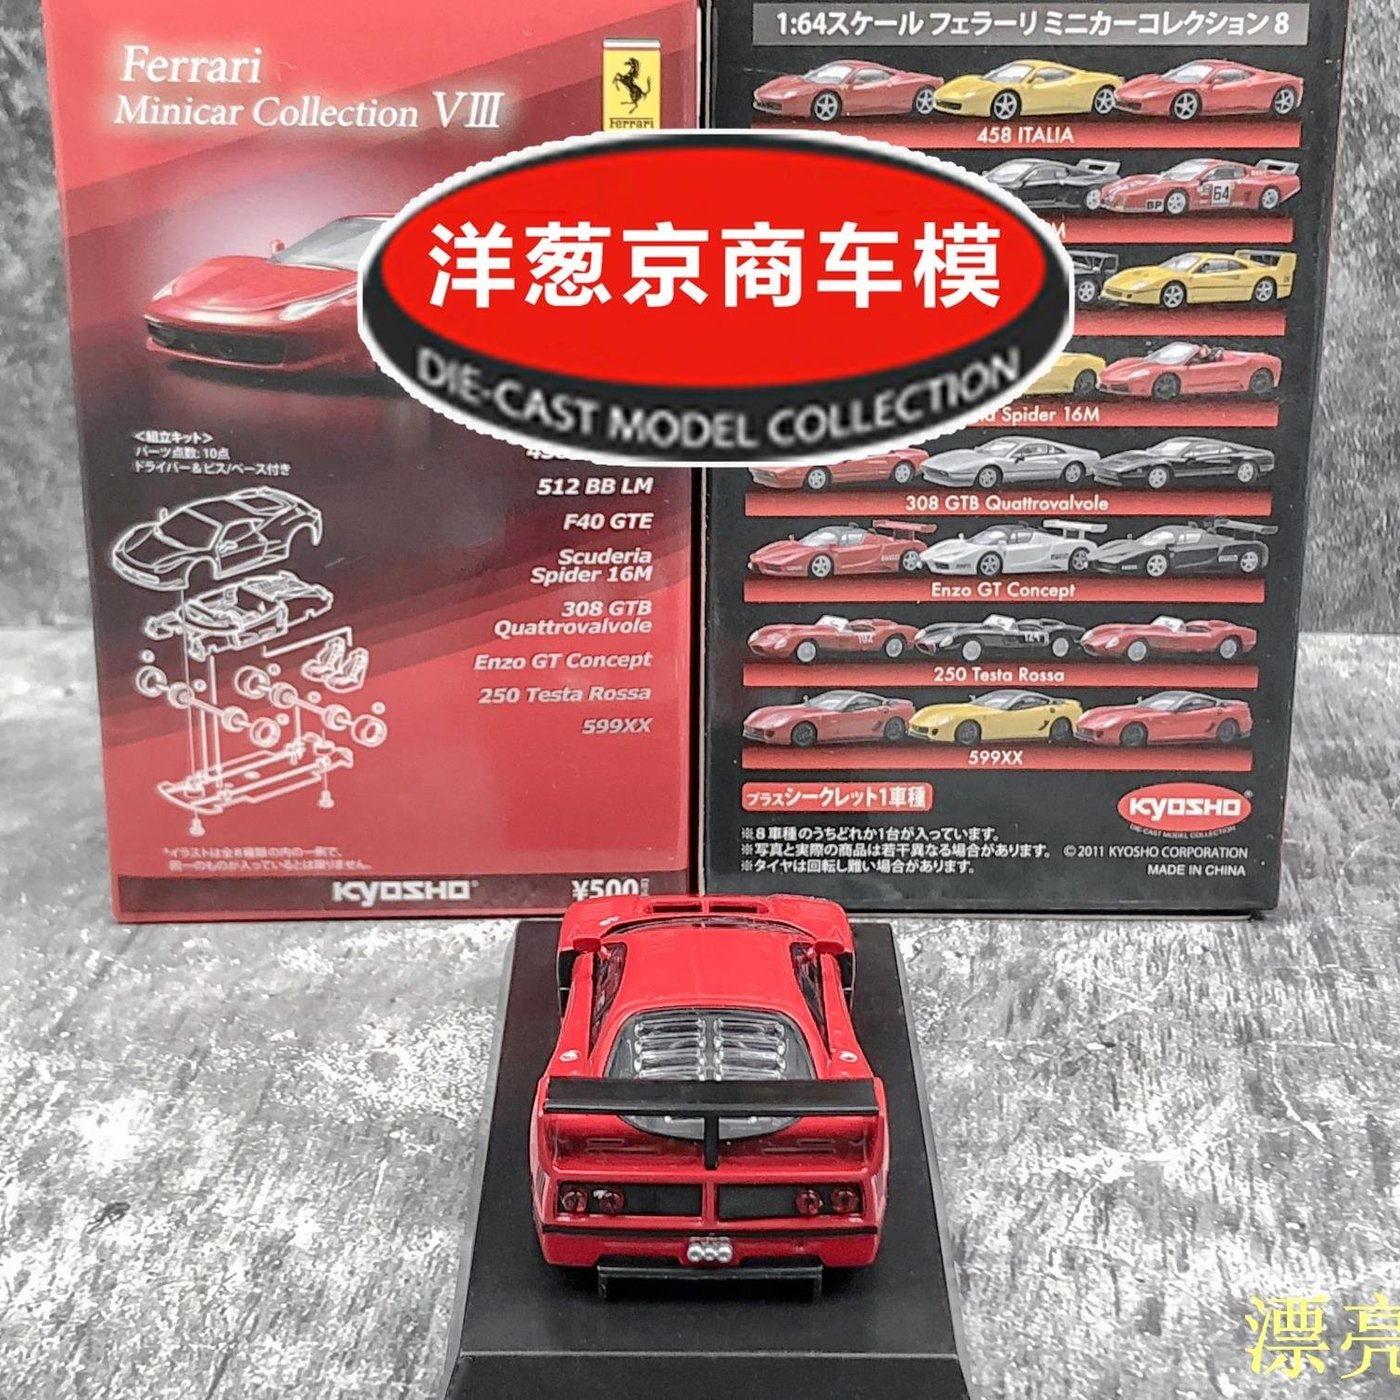 熱銷模型車1:64 京商kyosho 法拉利F40 GTE 正紅Ferrari 旗艦合金賽車模 